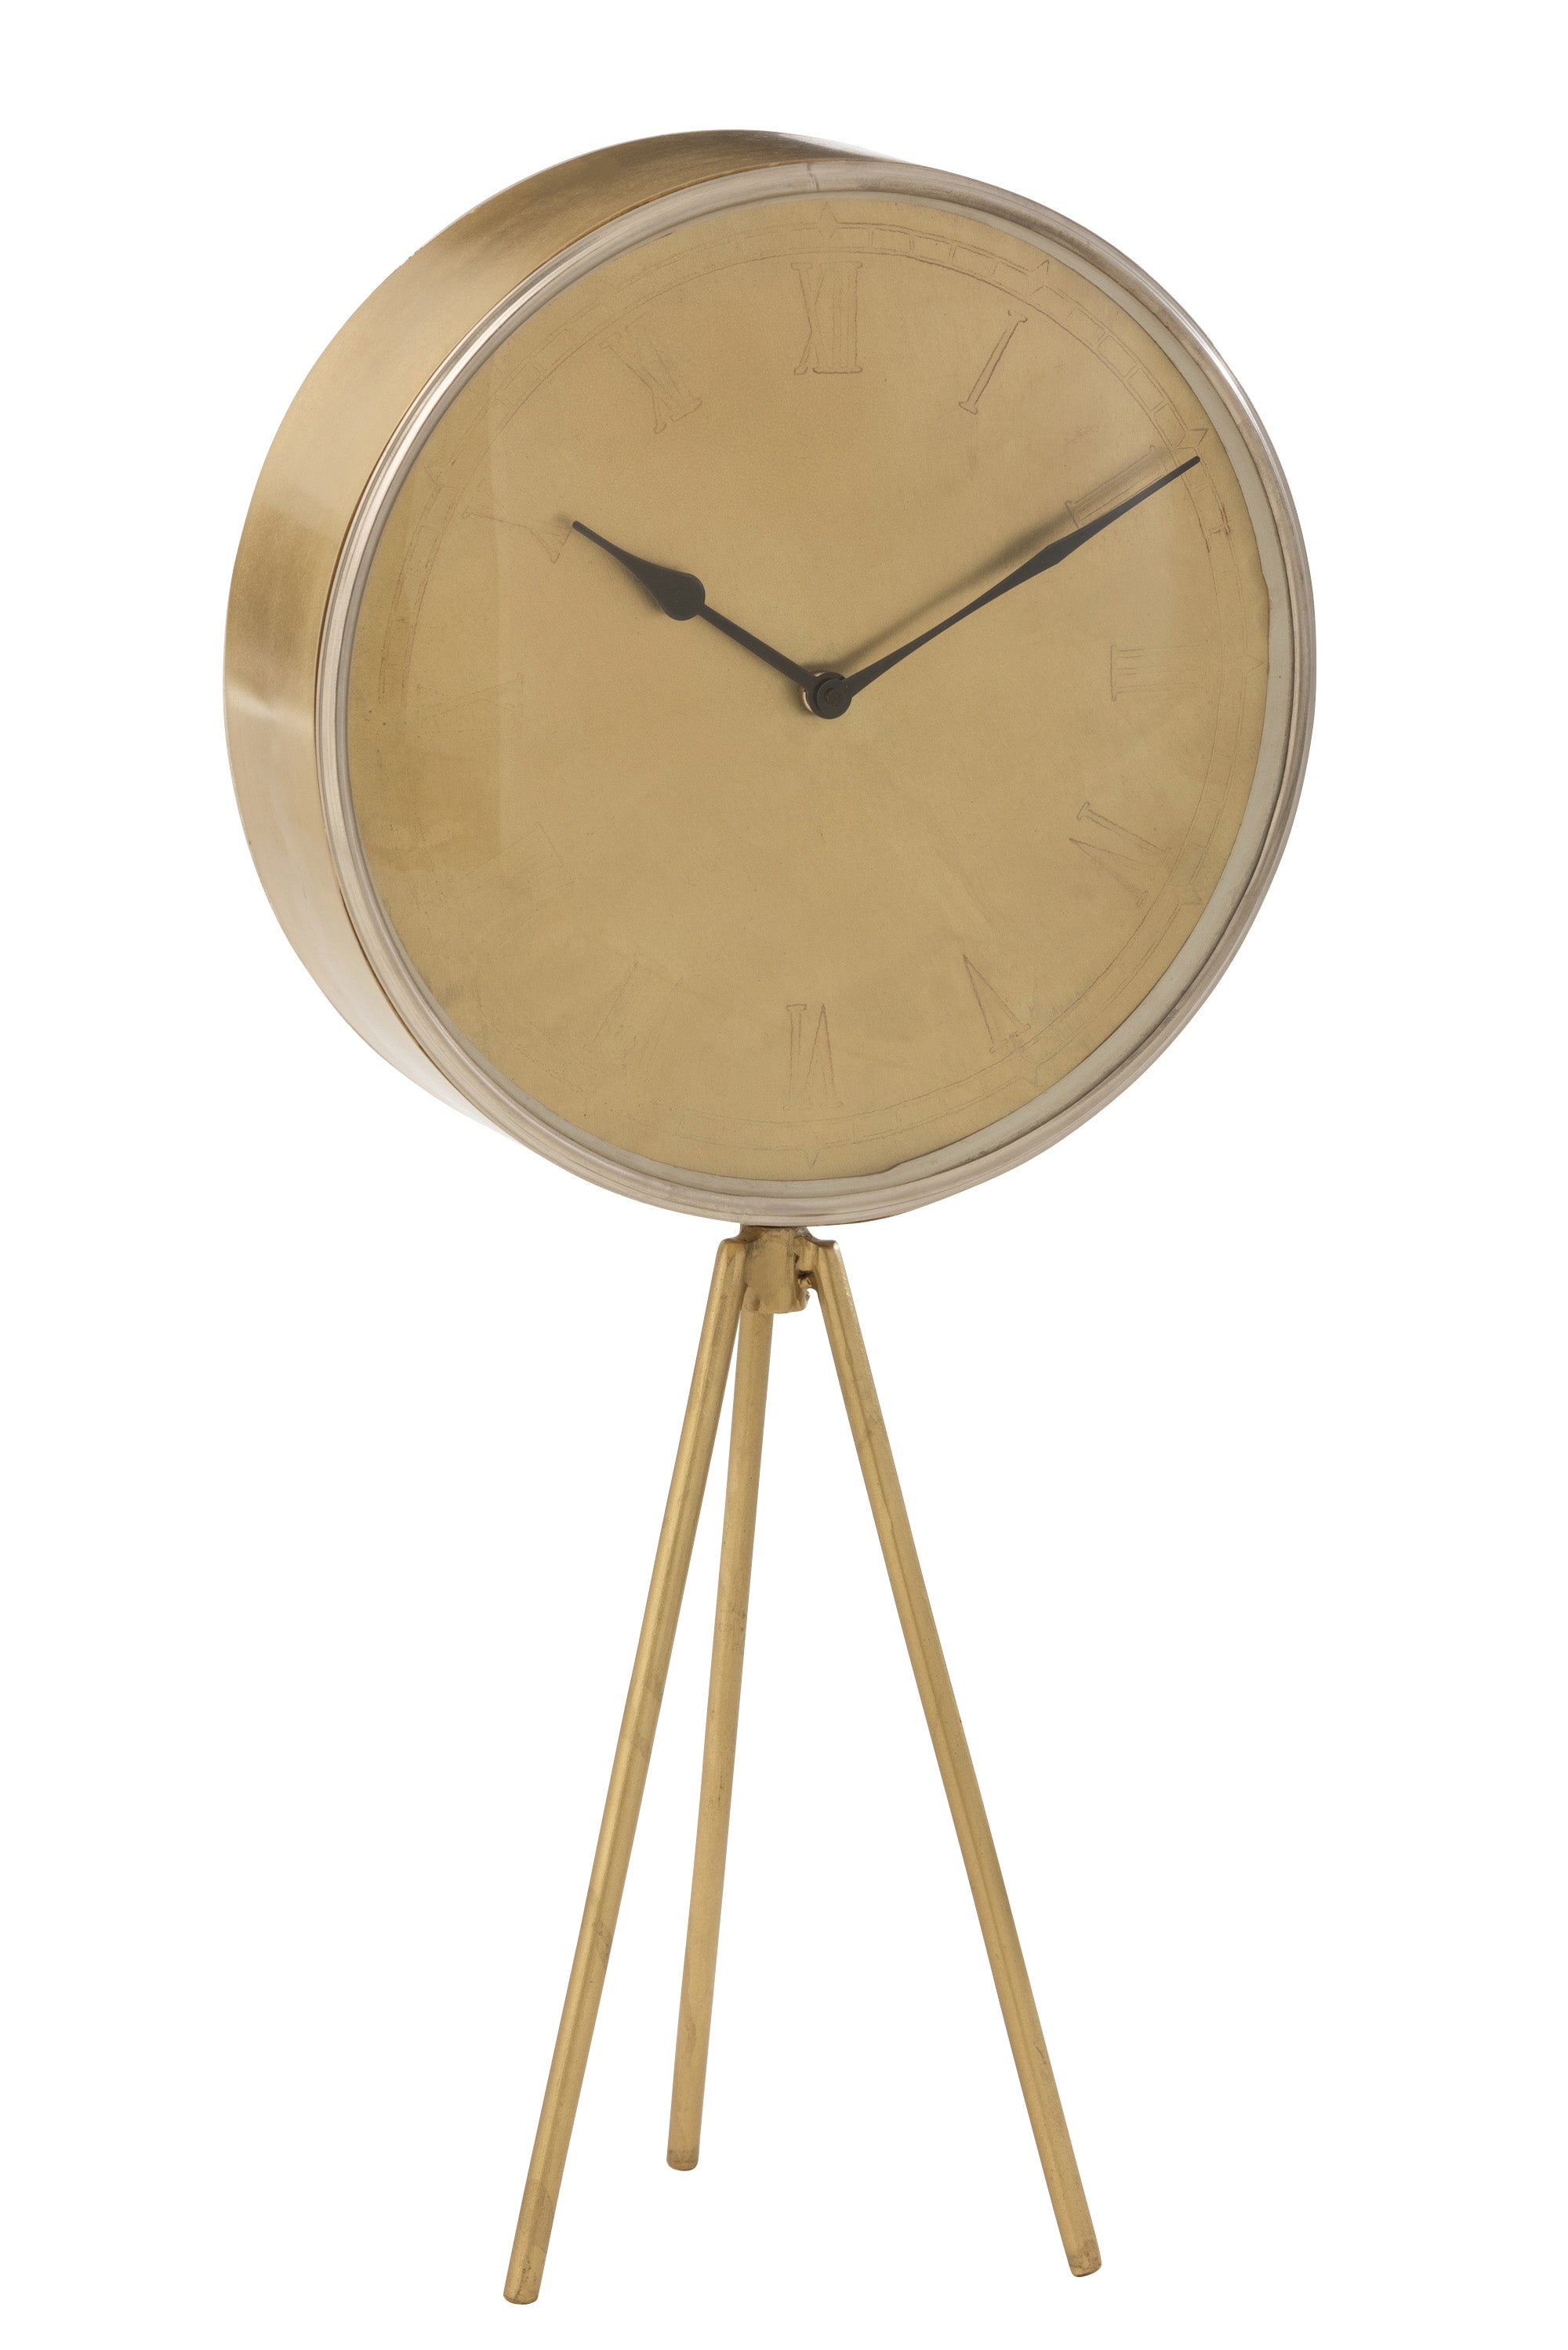 Große, runde Uhr aus goldfarbenem Metall mit breitem Gehäuse, Ziffernblatt mit angedeutet römischen Ziffern, Zeiger schwarz; die Uhr steht auf drei, im Verhältnis zum Uhrkorpus, kleinen Beinen - einem Stativ ähnlich.